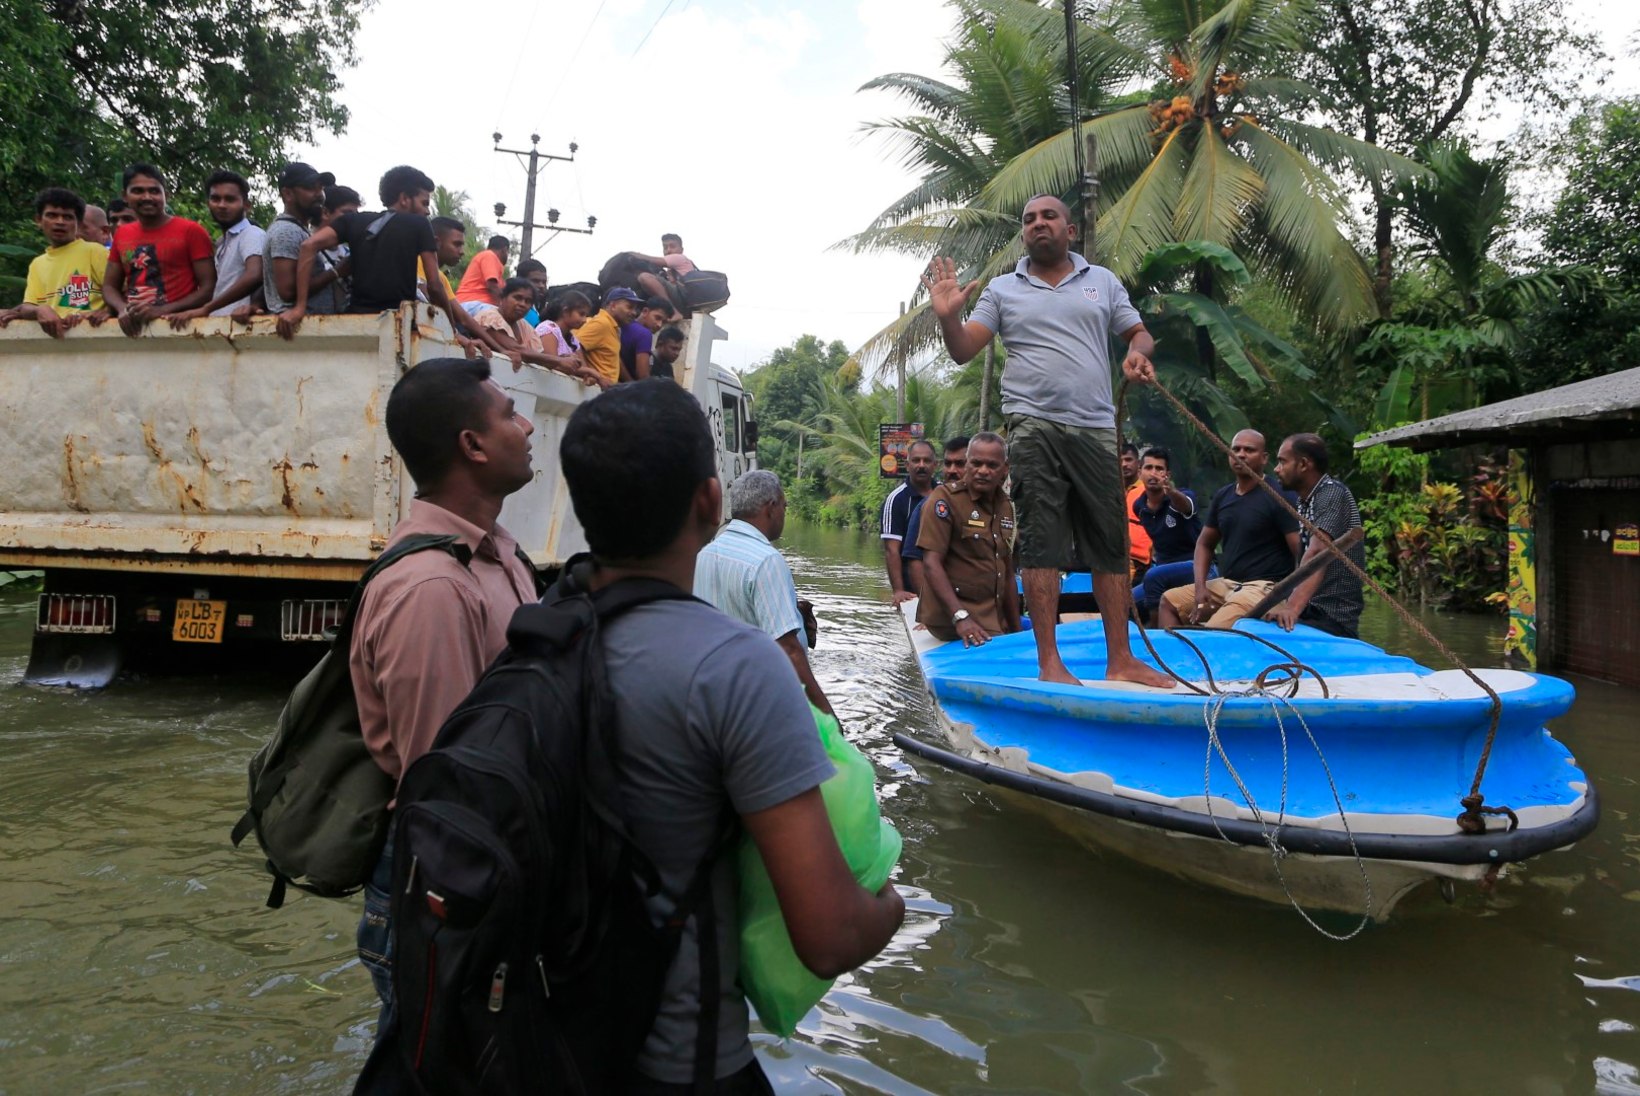 FOTOD | Sri Lanka päästjad on maalihete järel leidnud juba 151 surnukeha